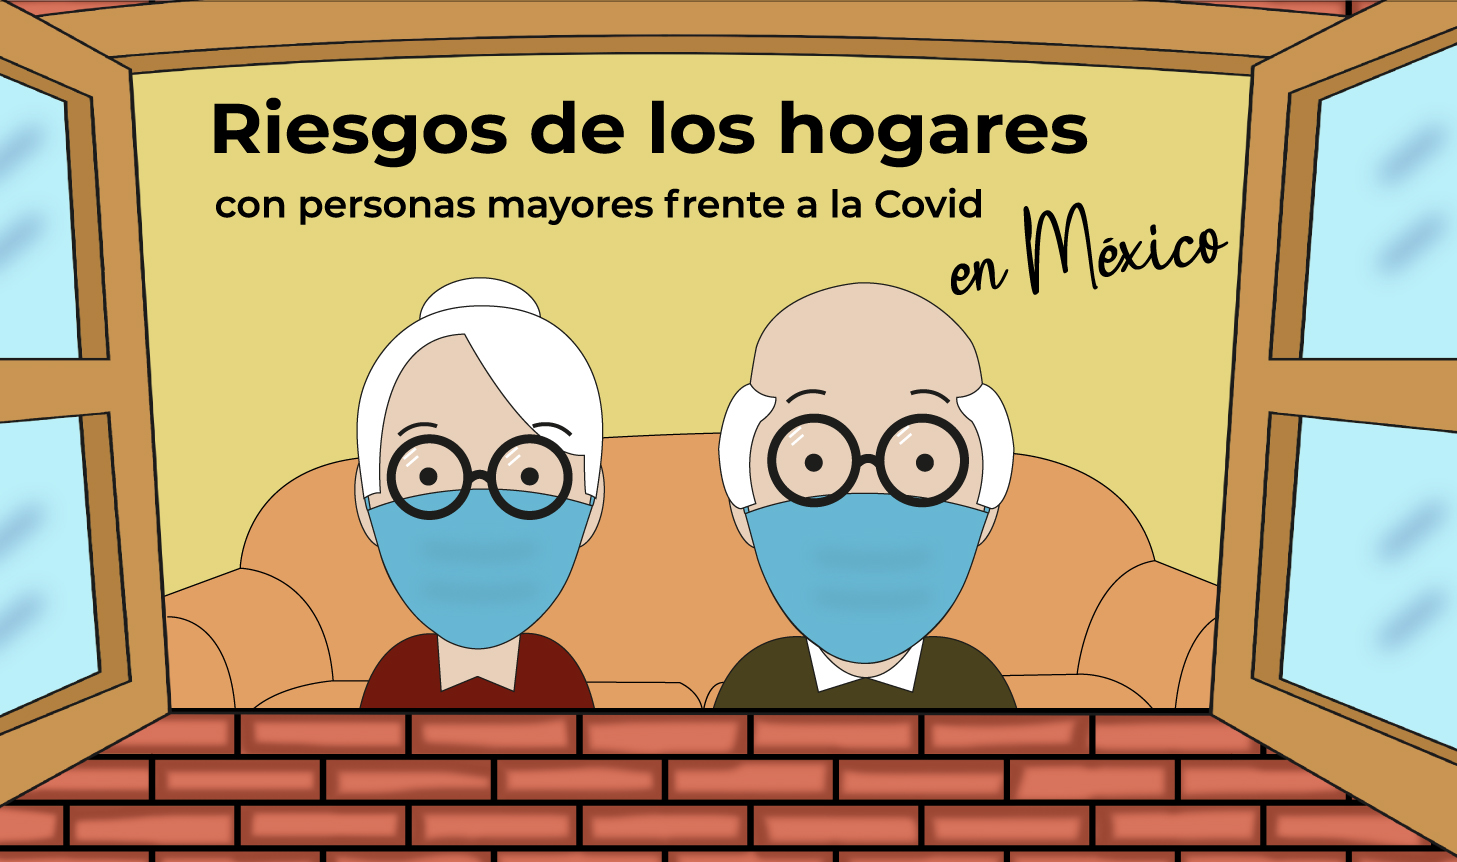 Imagen con el título de la publicación Riesgo de los hogares con personas mayores frente a la COVID 19 en México 